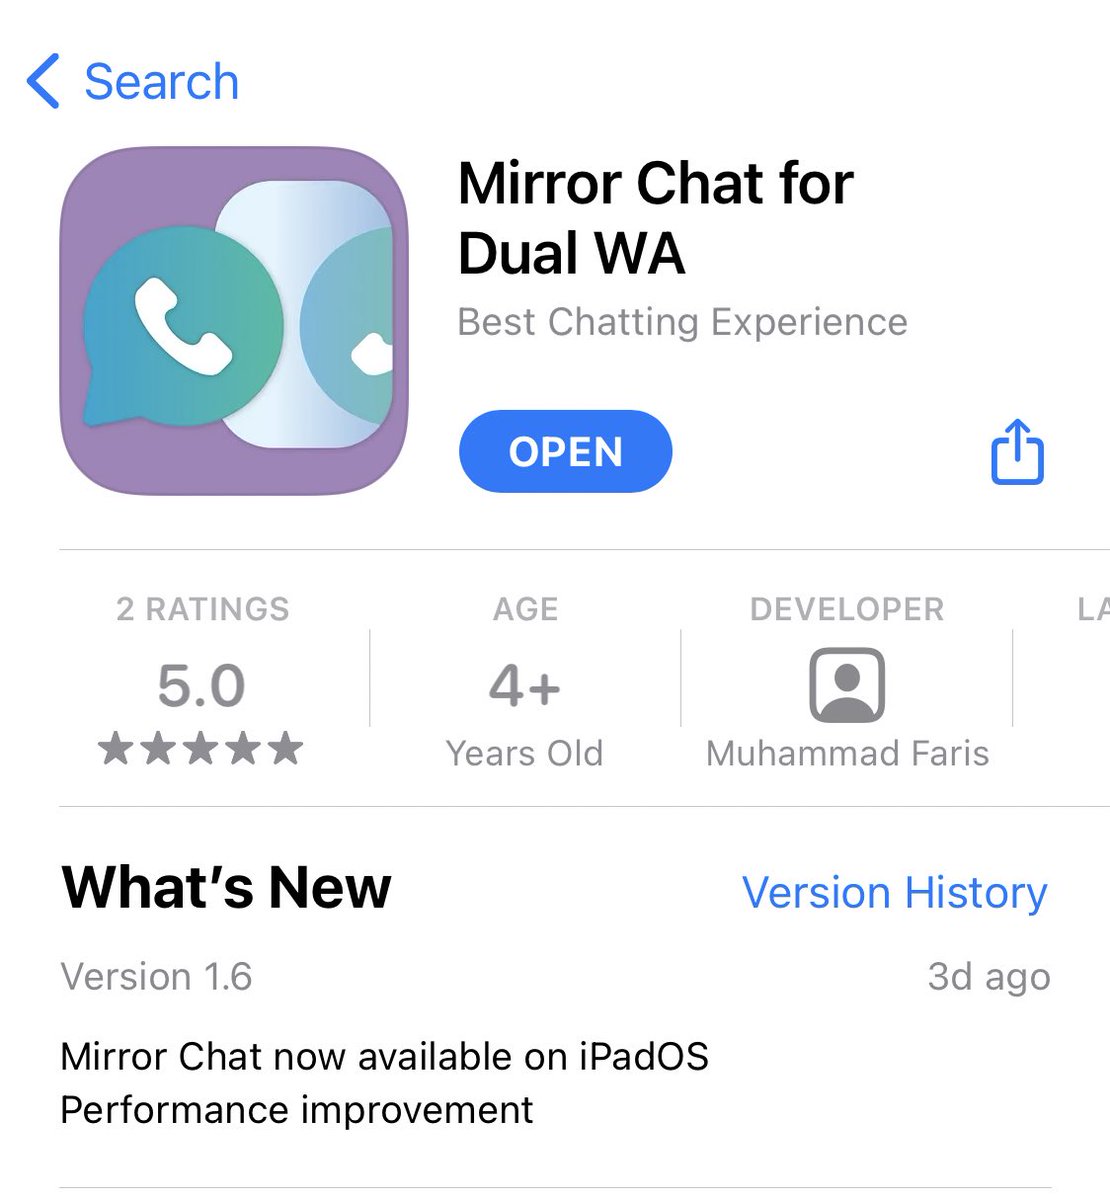 Untuk mencoba tips ini silakan instal aplikasi Mirror Chat for Dual WA hasil karya  @ichFaris Instal di iPhone kedua atau iPad juga bisa.  https://apps.apple.com/id/app/mirror-chat-for-dual-wa/id1538267846